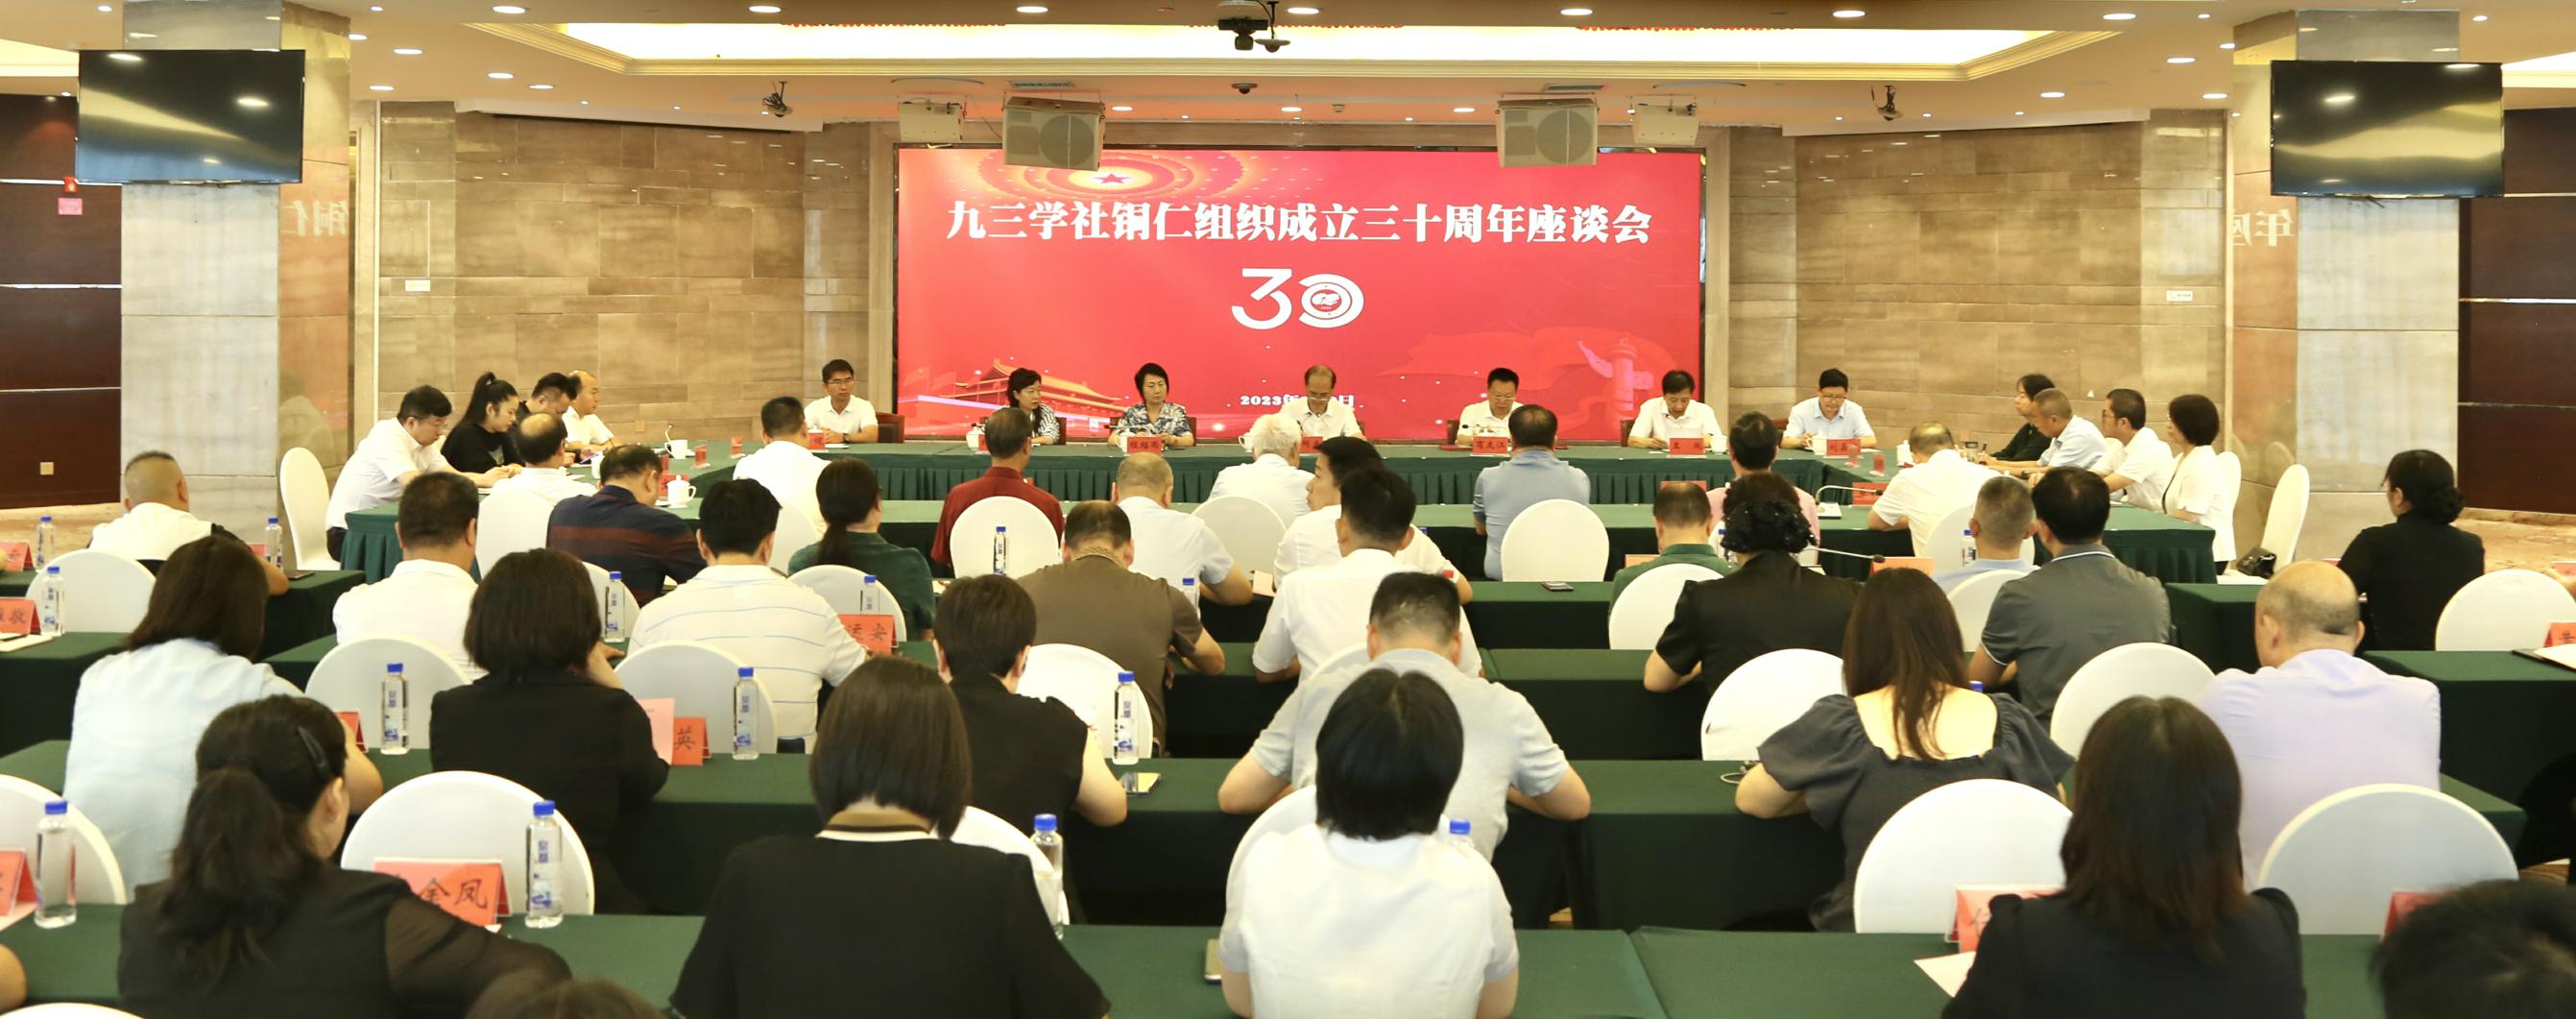 九三学社铜仁组织成立三十周年座谈会召开